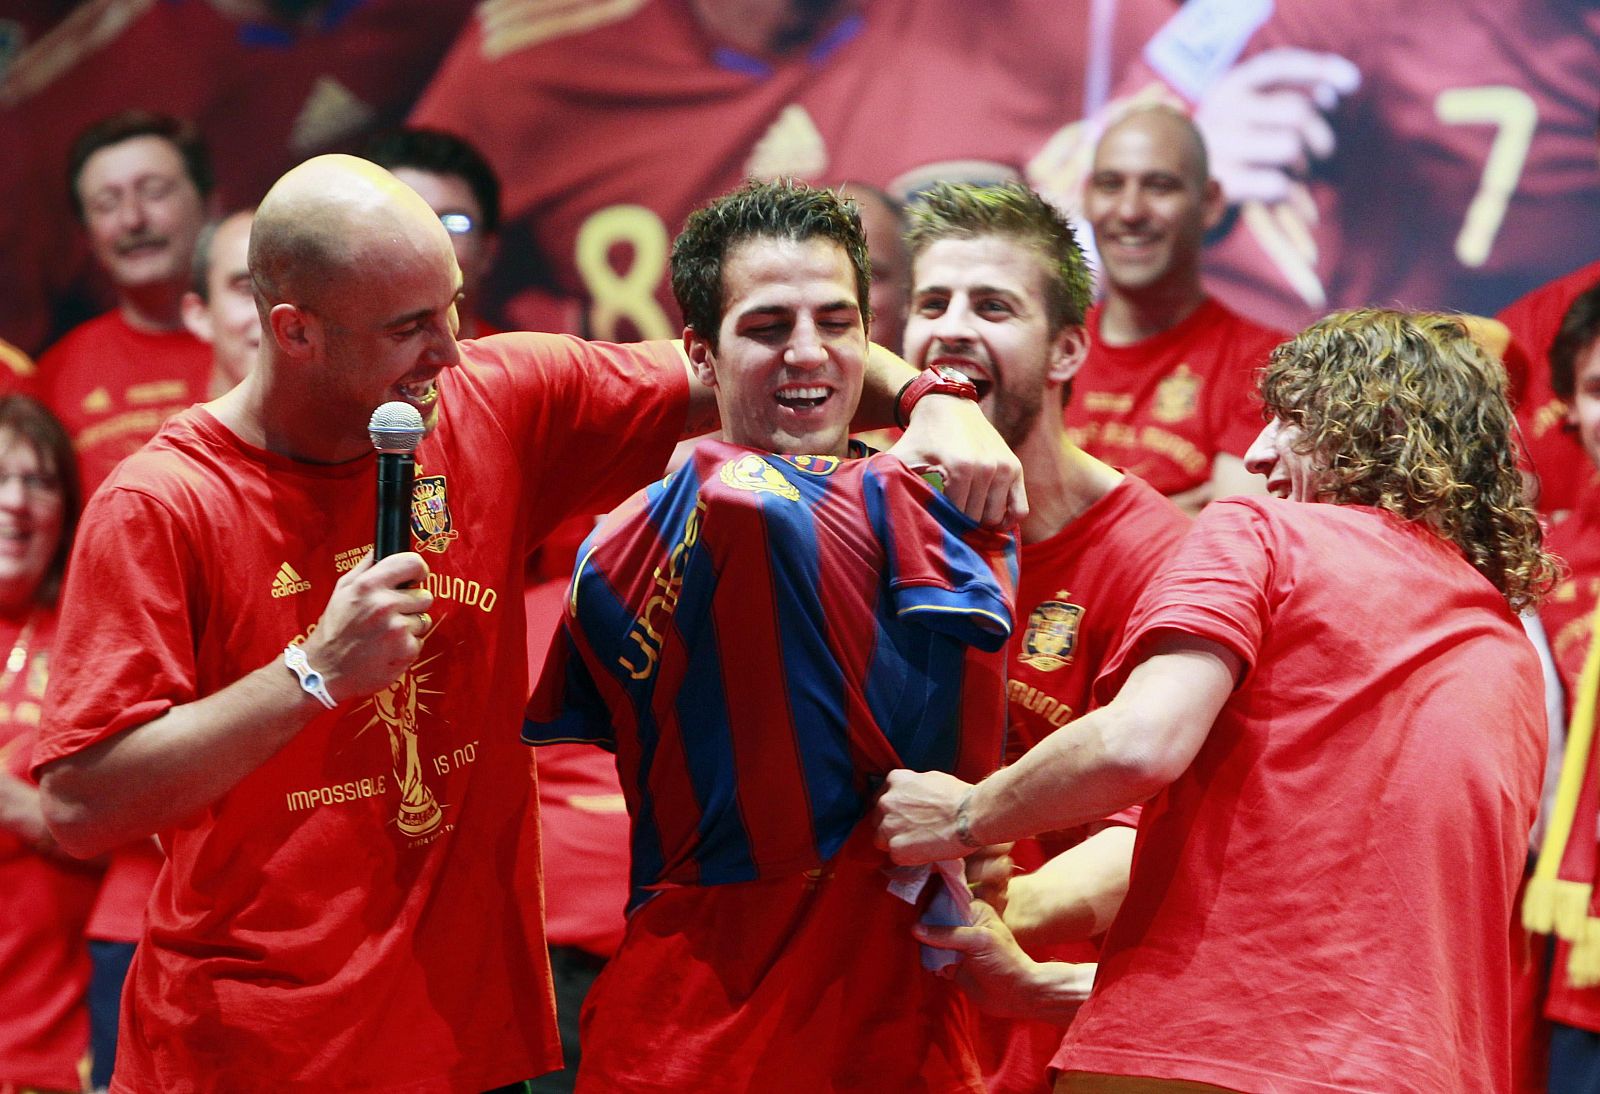 Puyol y Reina pusieron la camiseta del Barcelona a Cesc, jugador del Ársenal, durante la celebración del Mundial 2010 ganado por España.